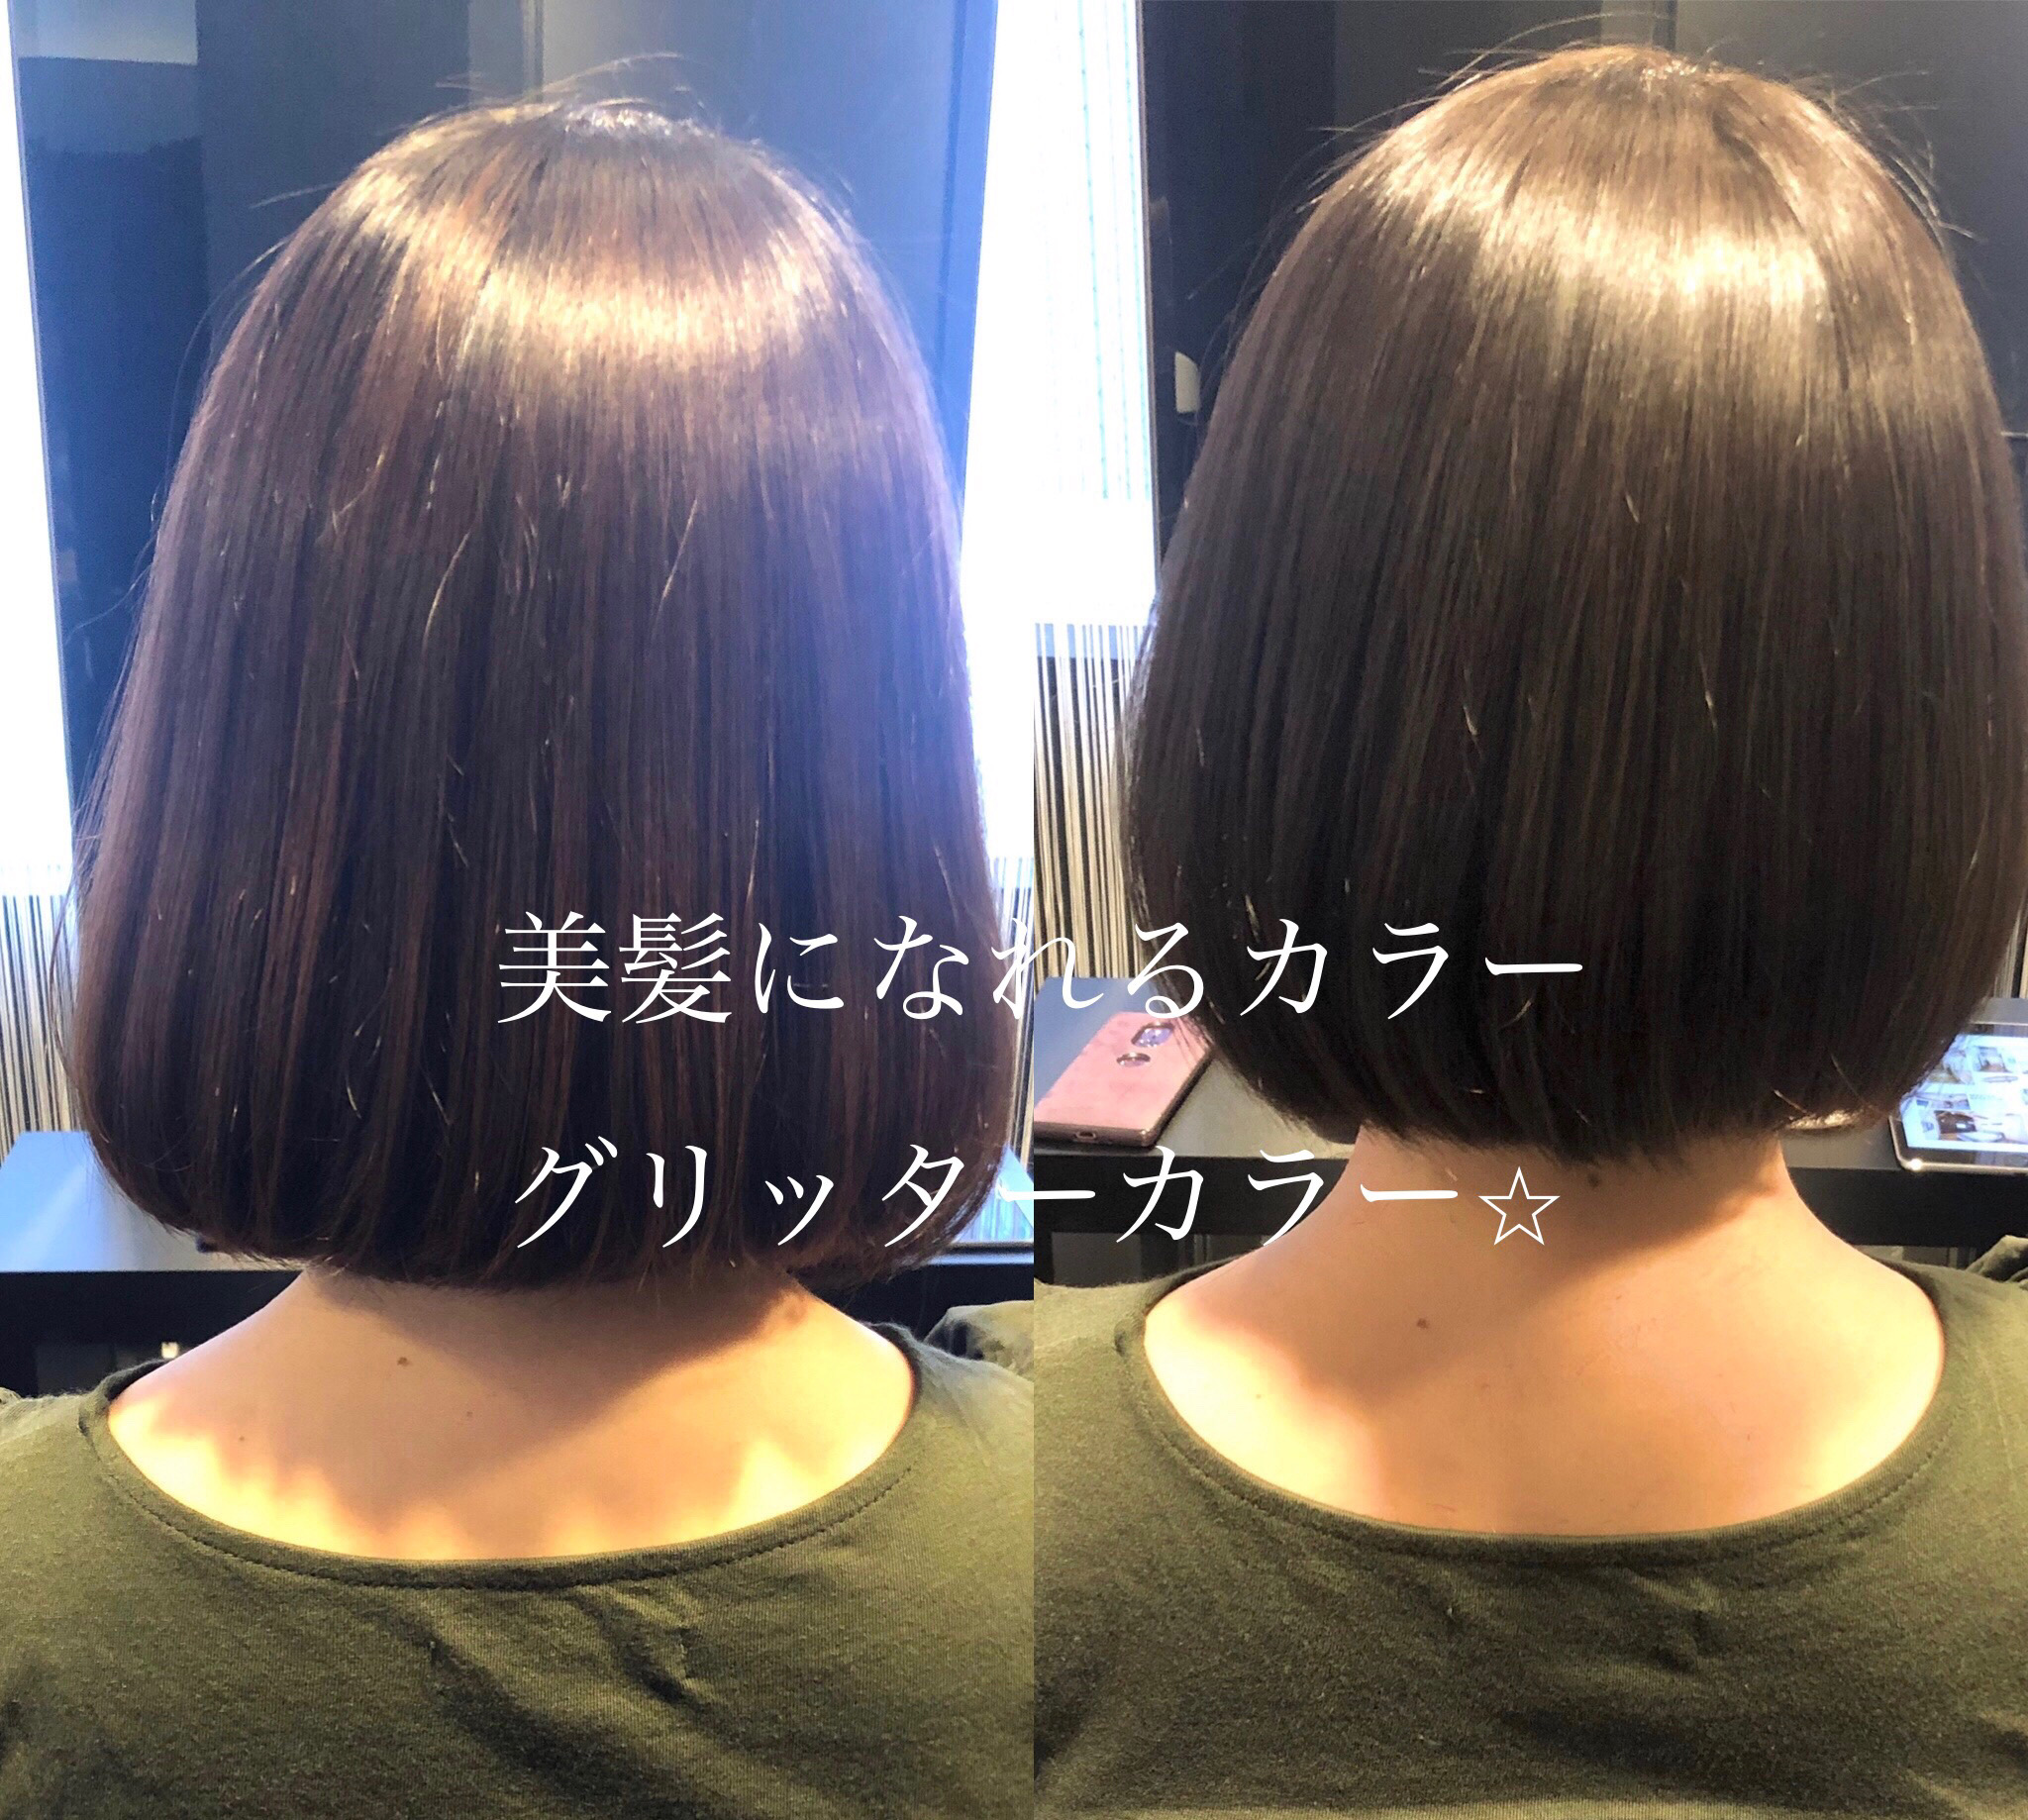 神戸 三宮 痛まないヘアカラー カラーをしながら艶髪 美髪になれる 神戸 三宮 美容室 Luce ルーチェ の美容師 山内 茂blogs